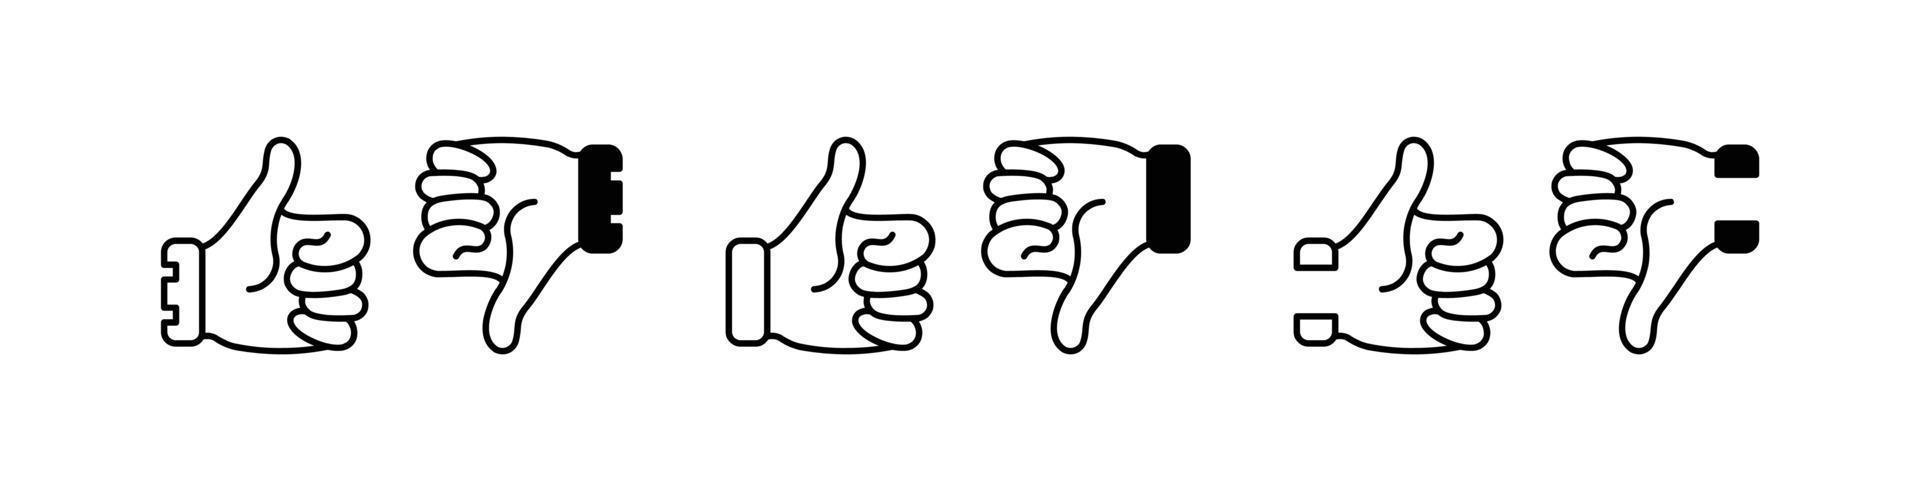 conjunto de ícones semelhantes, ícone de polegar para cima e para baixo. sinal de ícone de polegar para cima e para baixo isolado no fundo branco - ilustração vetorial vetor